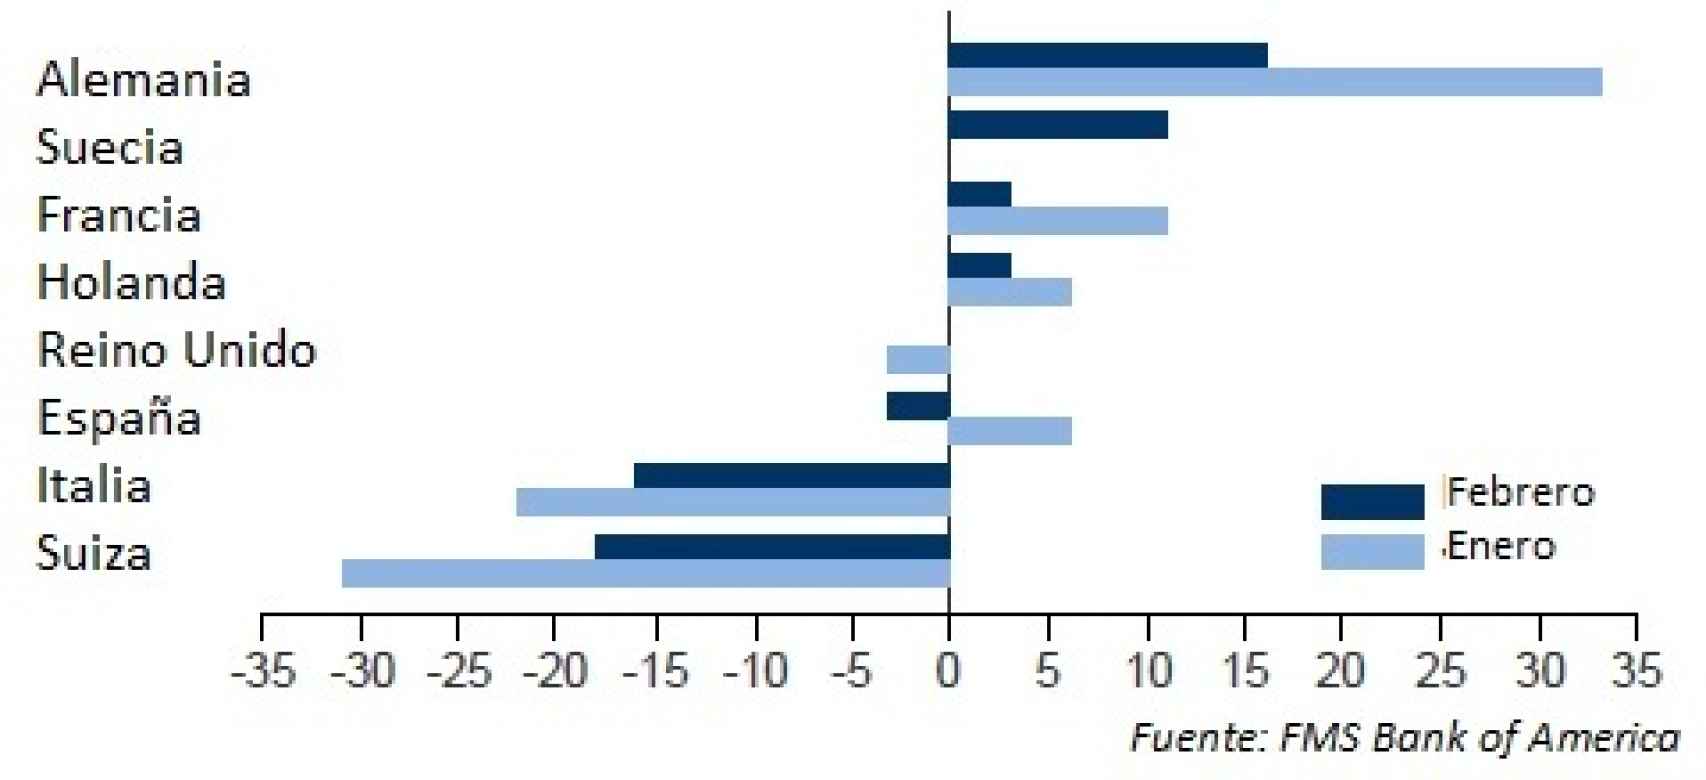 Preferencias de inversión de gestores profesionales en los mercados europeos.